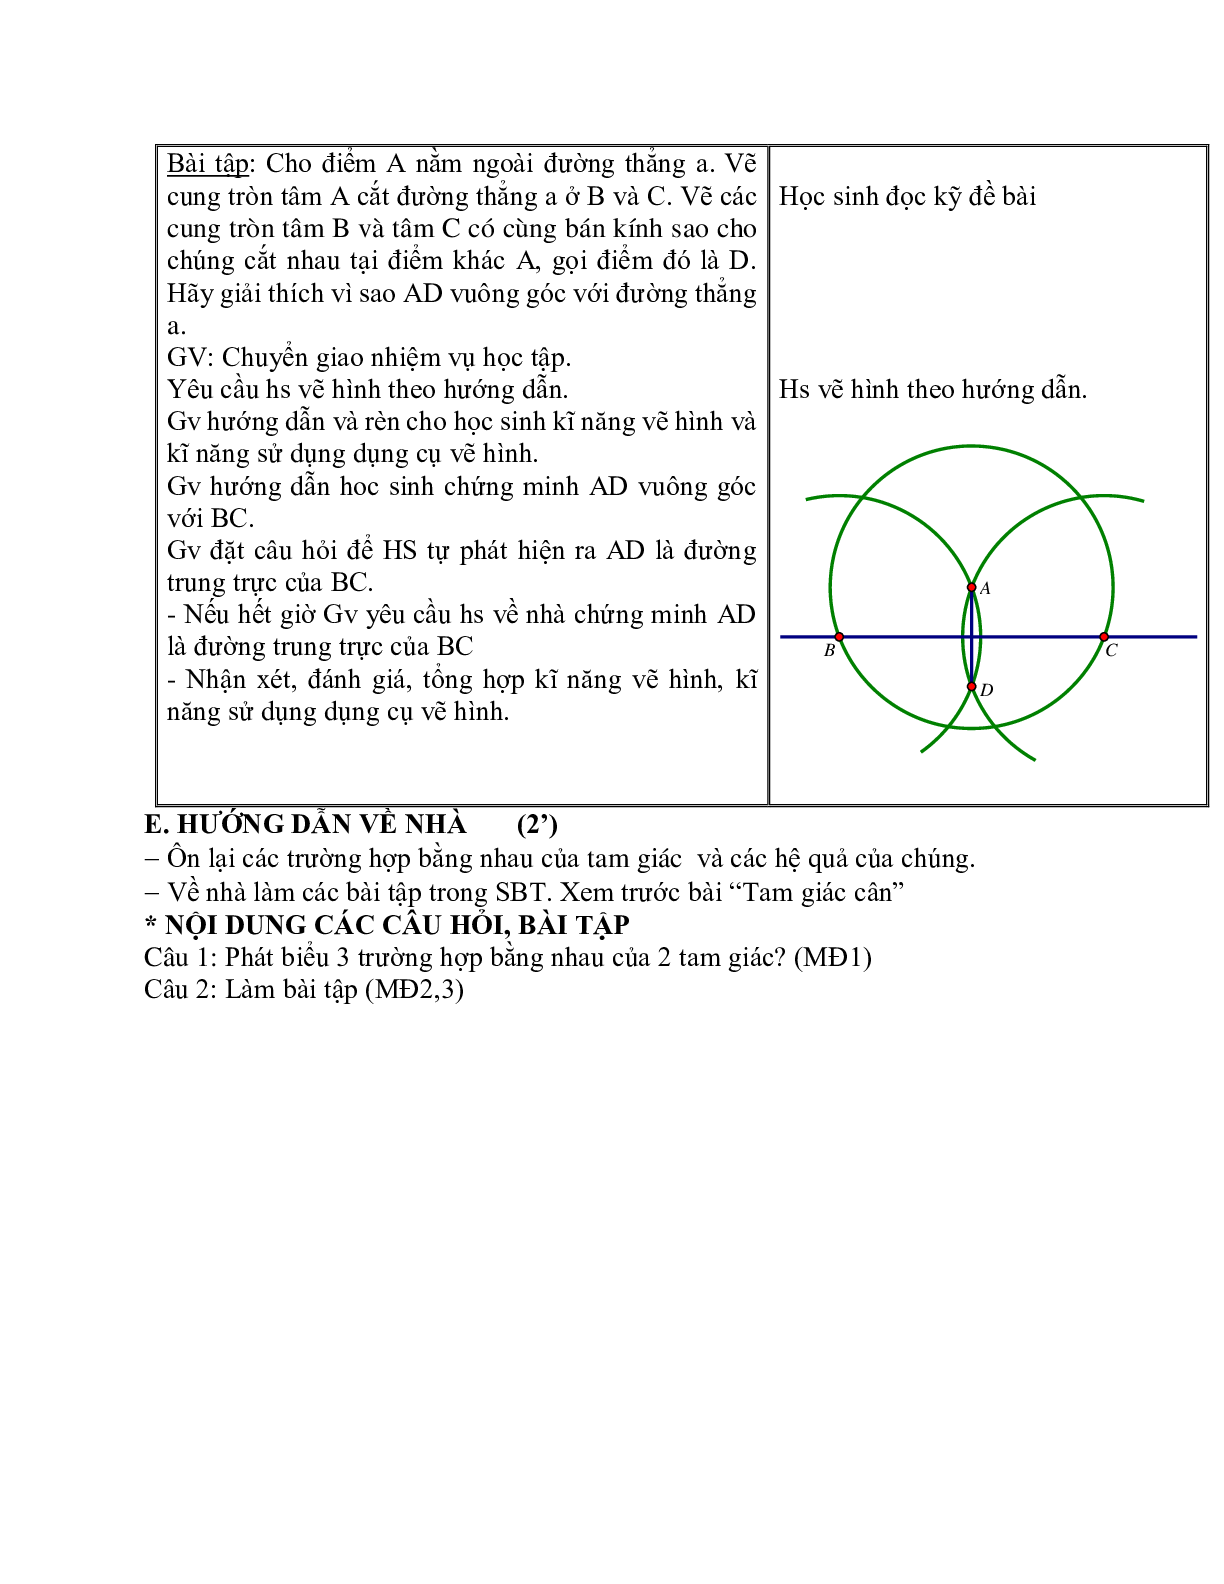 Giáo án Toán học 7: Luyện tập về ba trường hợp bằng nhau của tam giác (TT) hay nhất (trang 4)